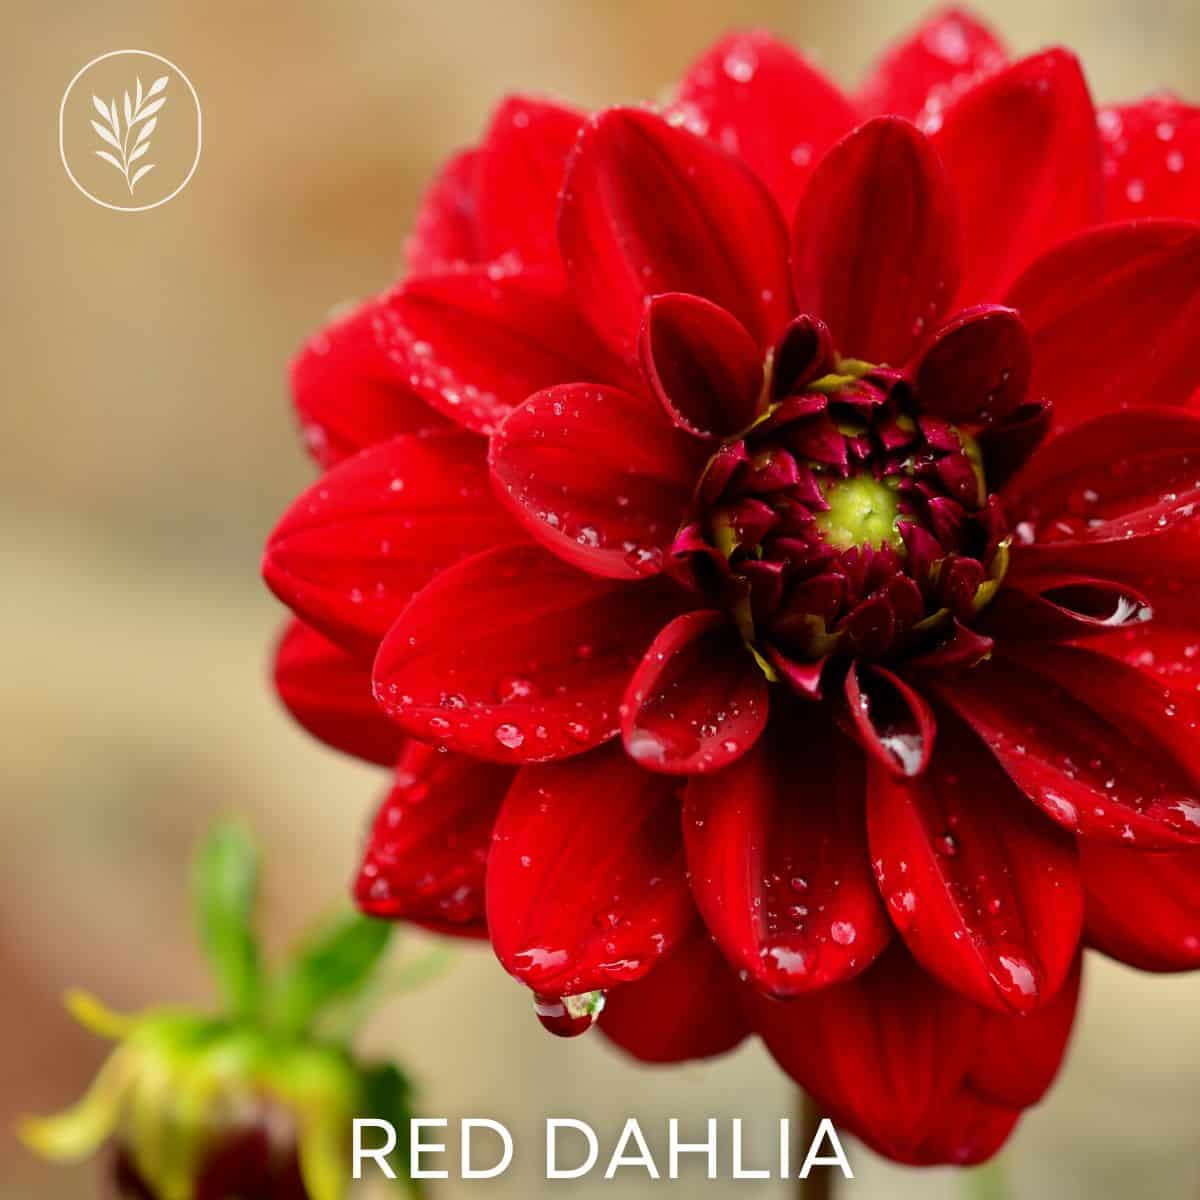 Red dahlia via @home4theharvest